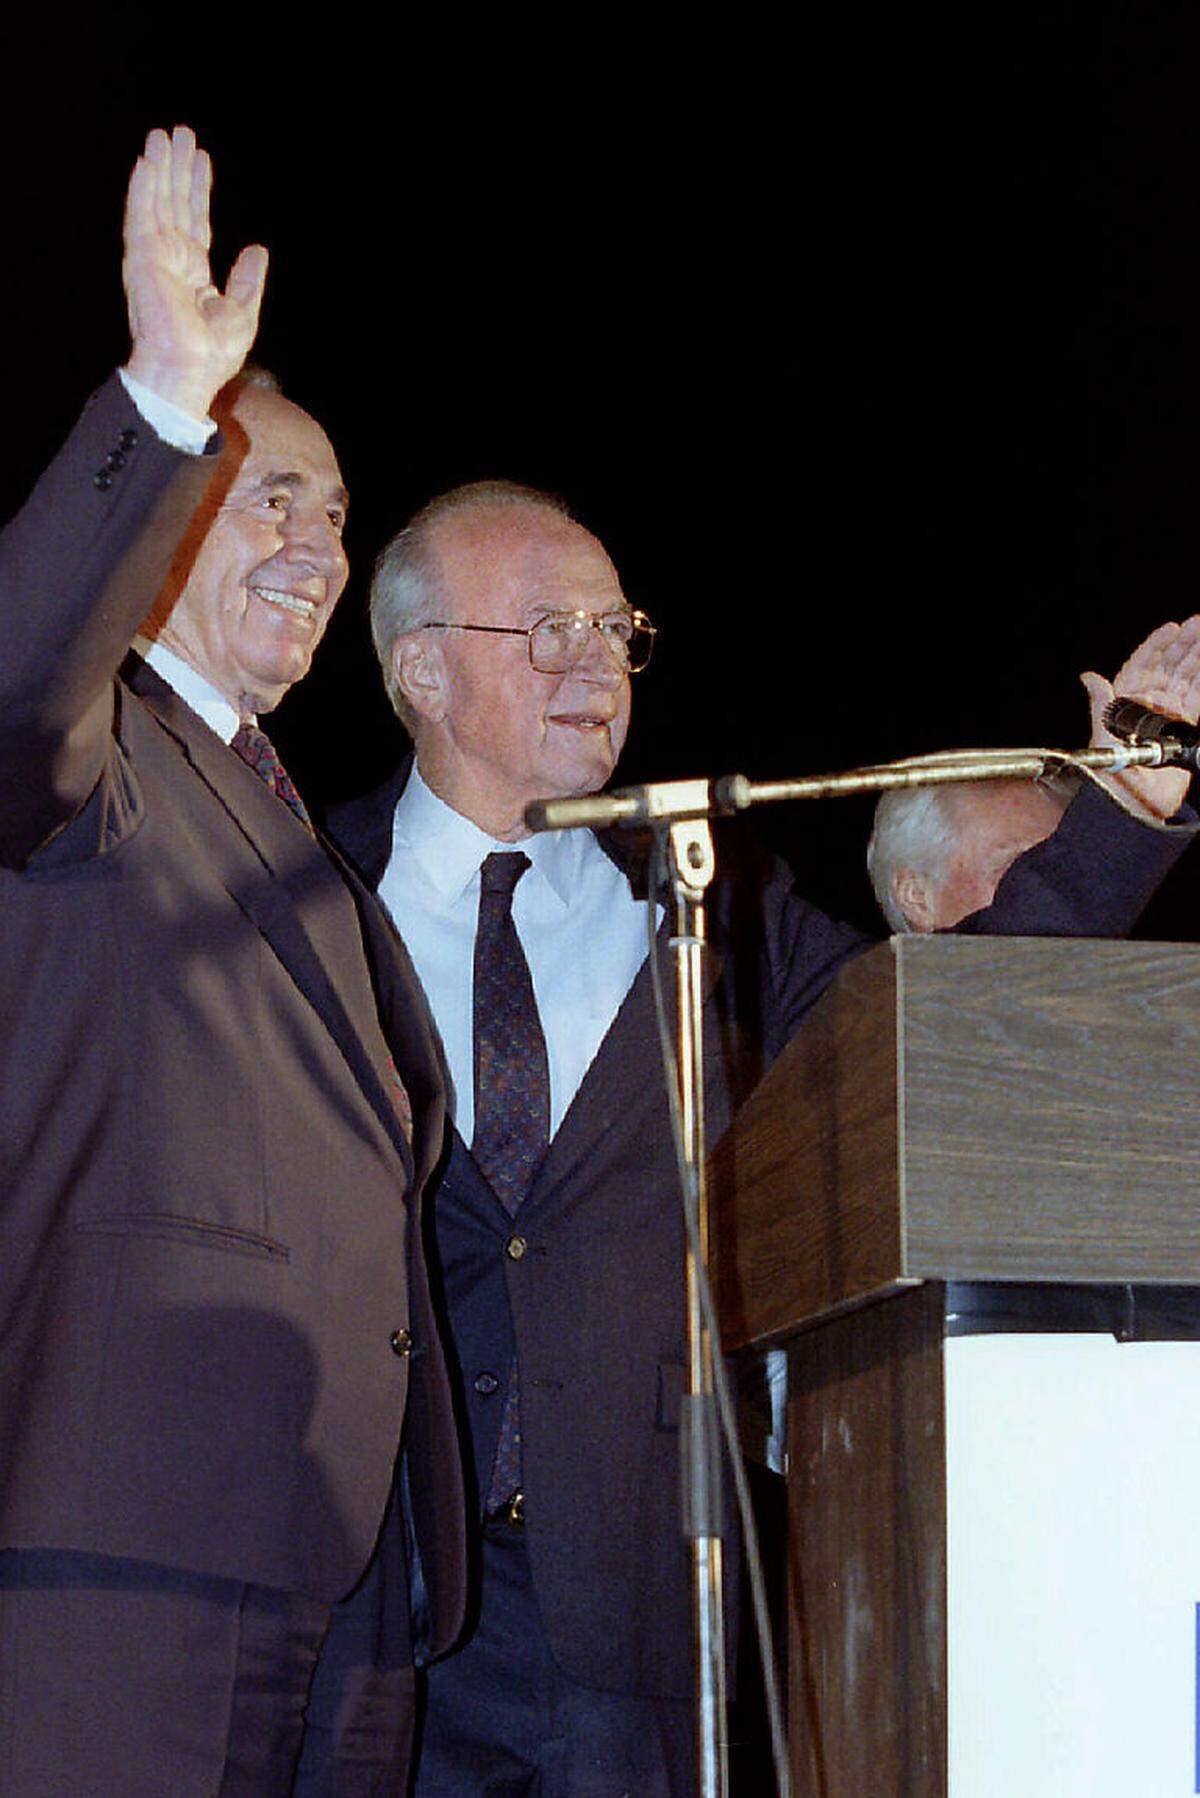 Hier stehen sie noch einträchtig beisammen bei einer Friedenskundgebung, Israels Premier Yitzhak Rabin und sein Außenminister Shimon Peres. Nur wenig später wurde Rabin von einem jüdischen Rechtsextremisten ermordet, der den Friedensprozess mit den Palästinensern torpedieren wollte. Der 4. November 1995, ein schwarzer Tag für Israel und die ganze Region.